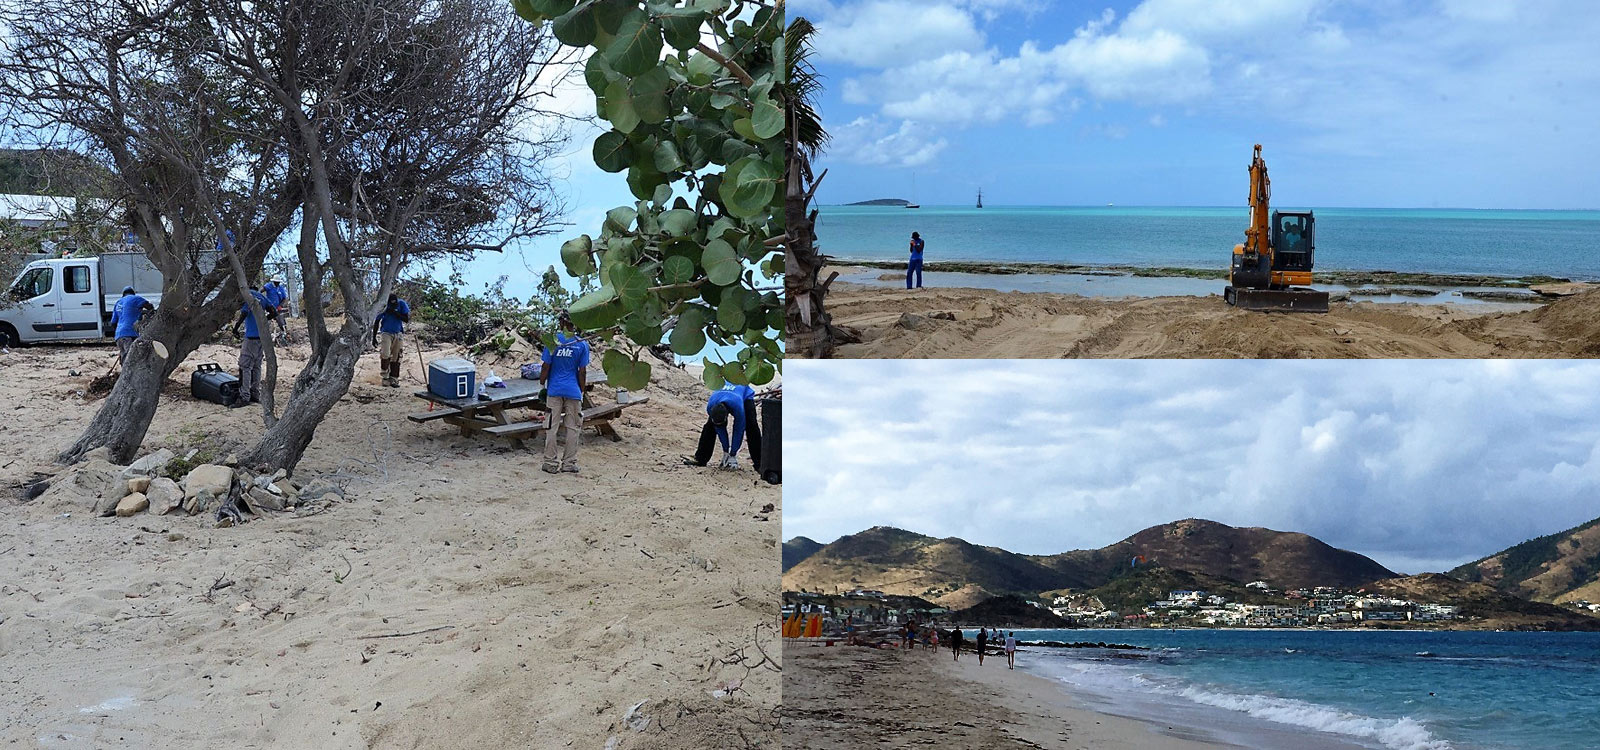 La Collectivit fait nettoyer les plages aprs le week-end de Pques